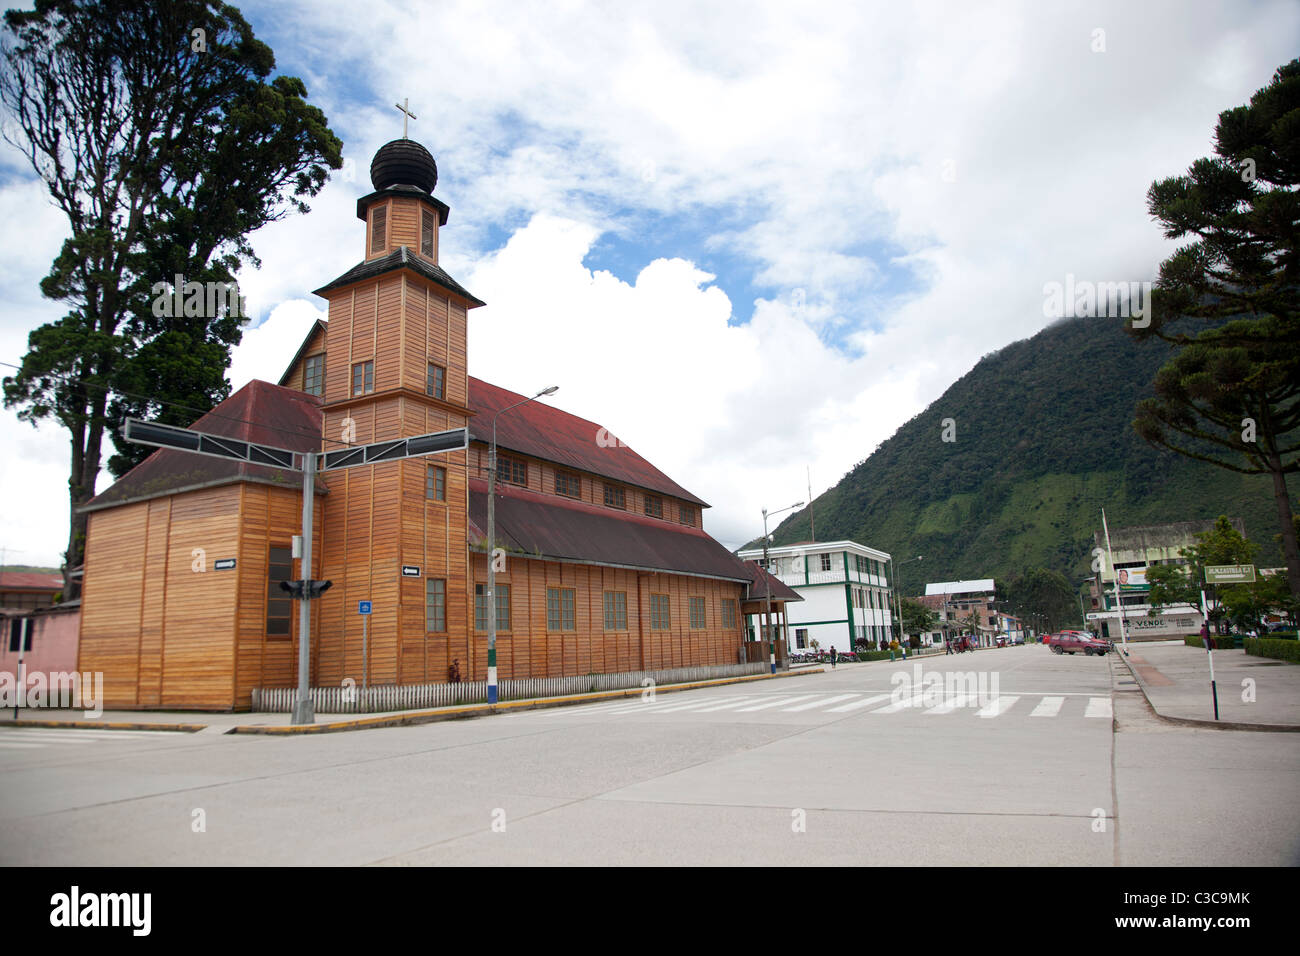 Oxapampa, eine seltene deutsche österreichische Niederlassung im hohen Amazonasgebiet Perus, berühmt für seine traditionelle Tiroler Architektur und Kultur. Stockfoto